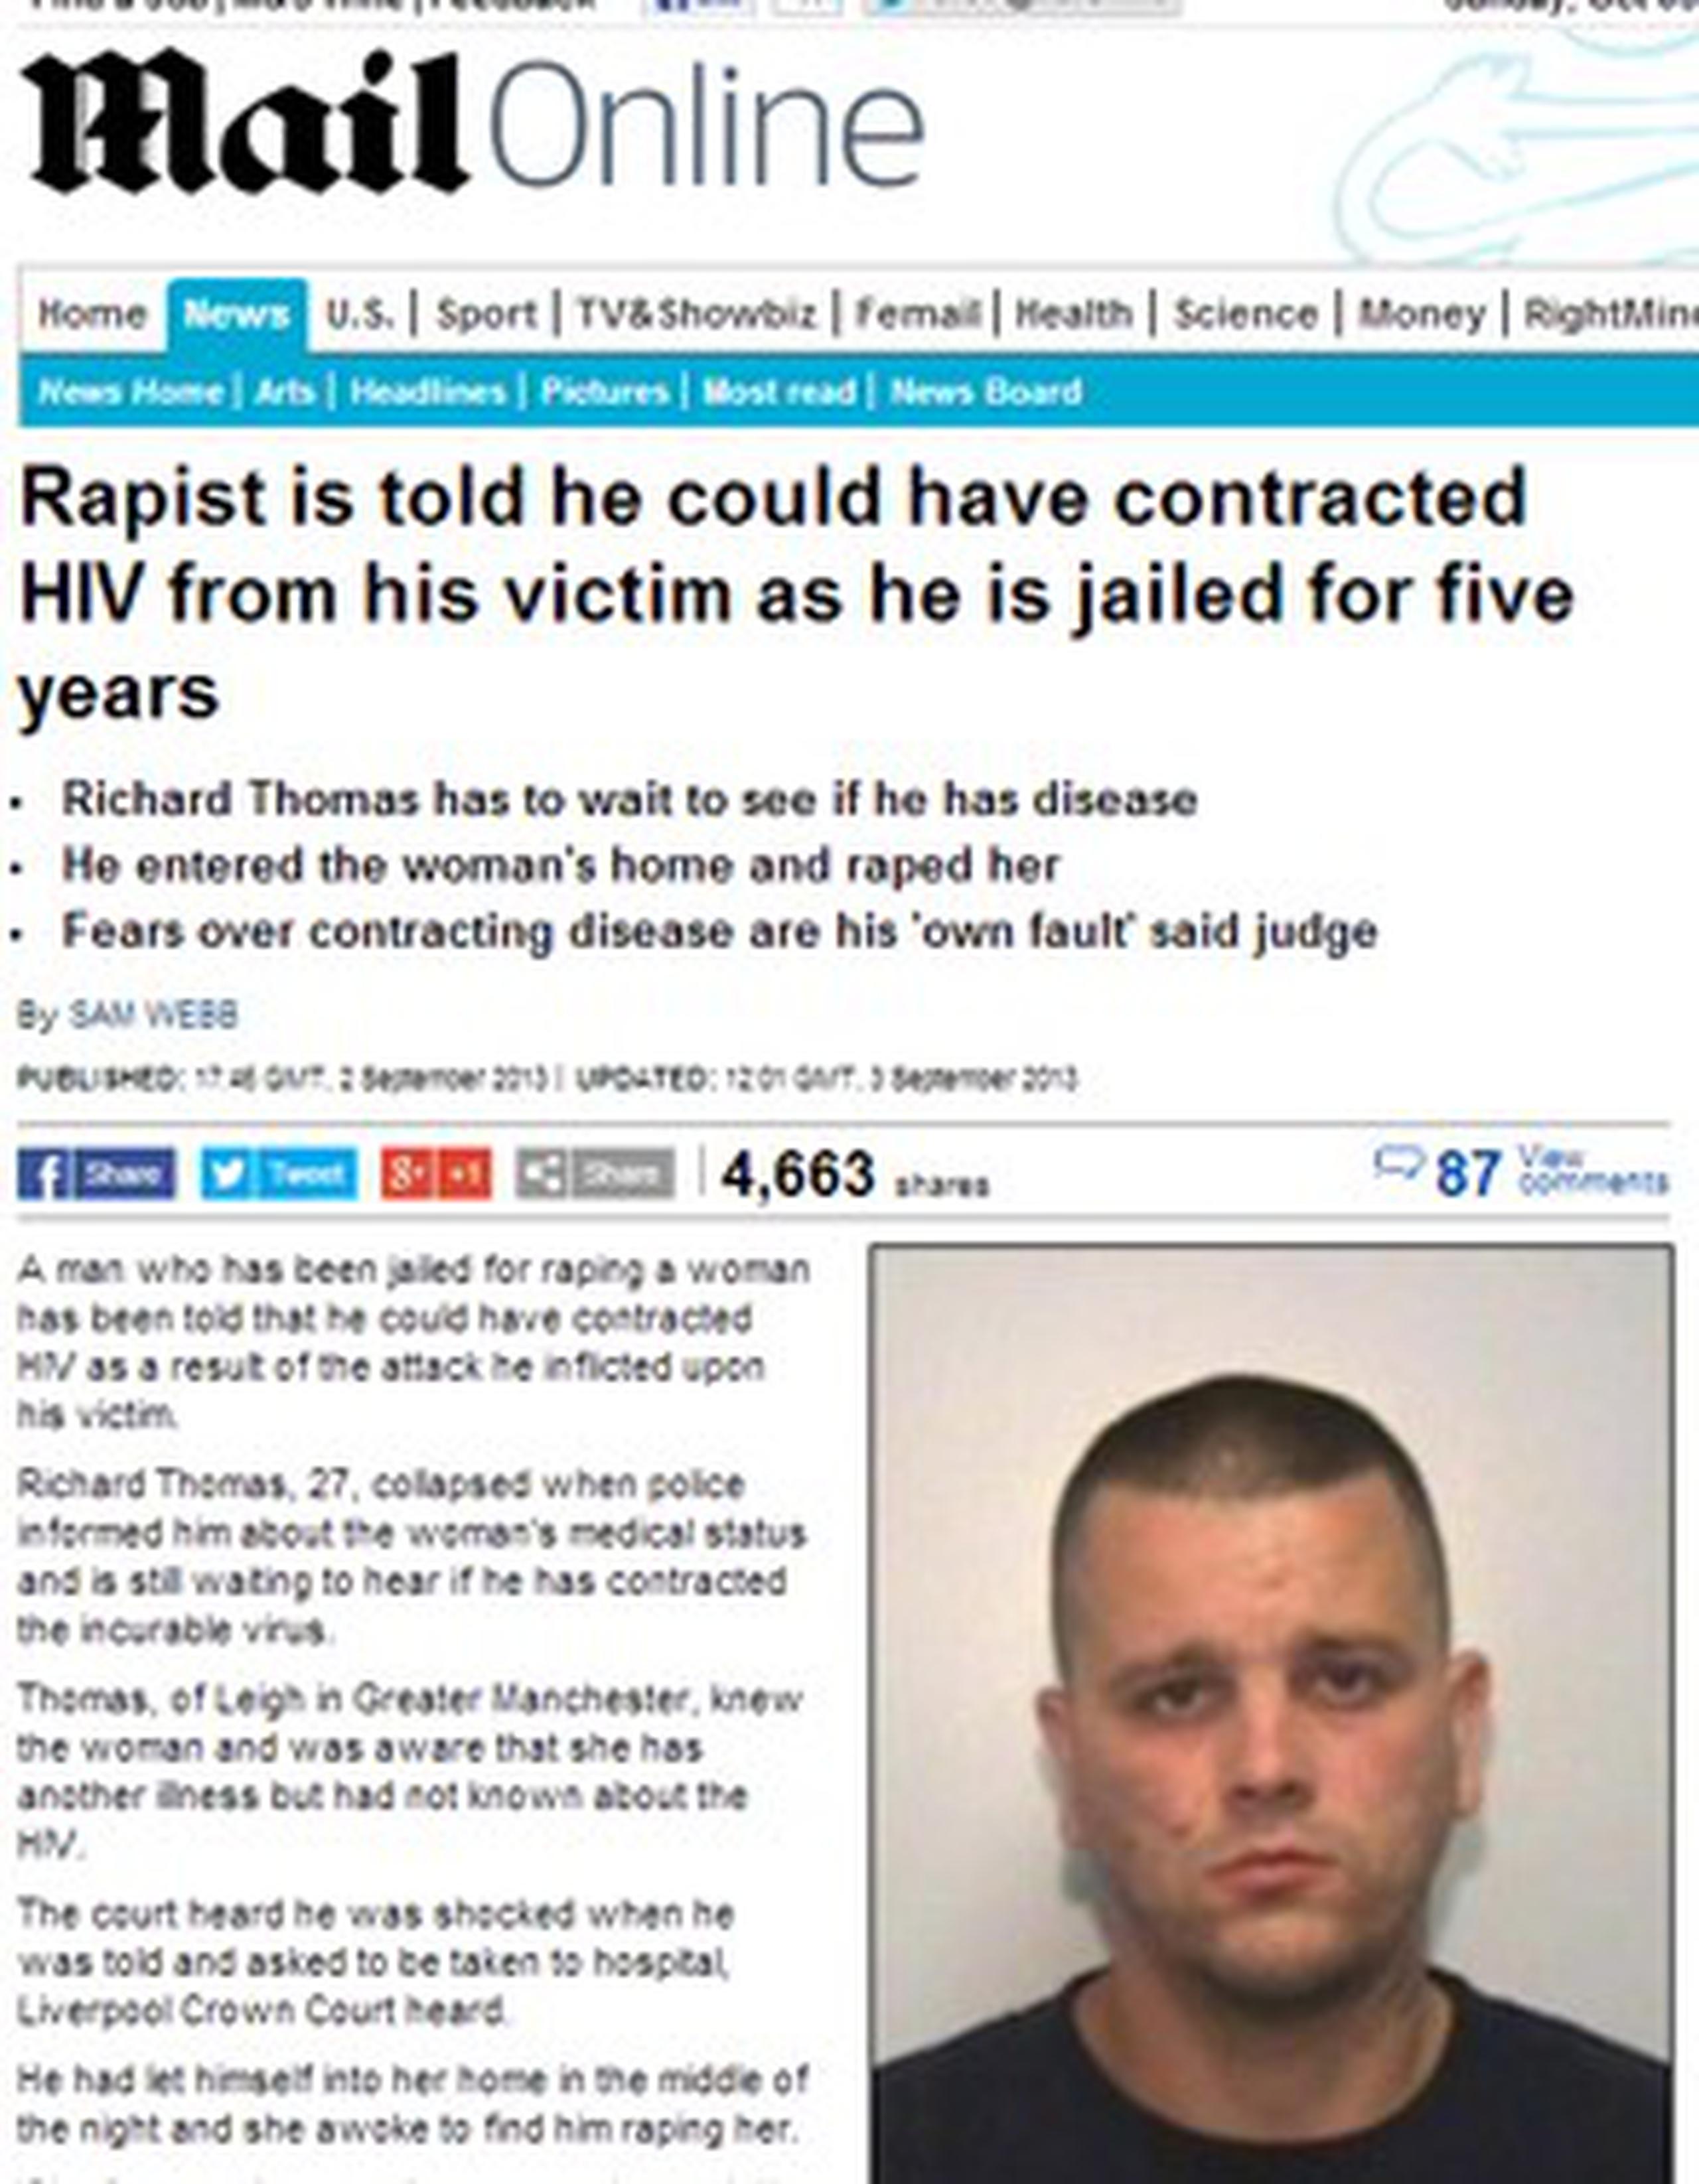 Richard Thomas, de 27 años, enfrenta una condena de 64 meses por la violación. (www.dailymail)
